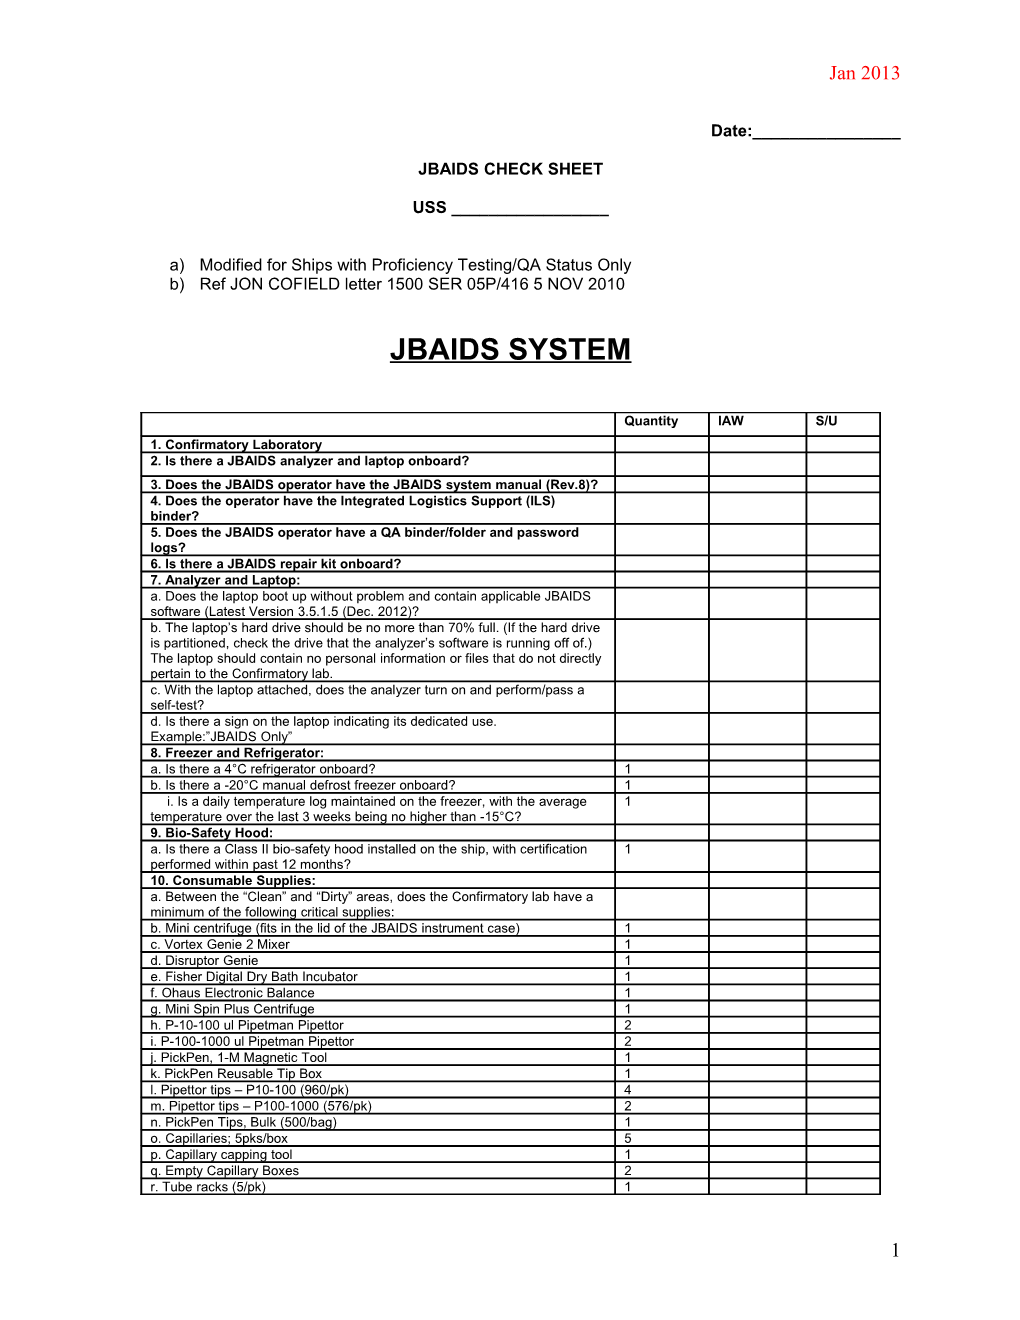 Jbaids Check Sheet